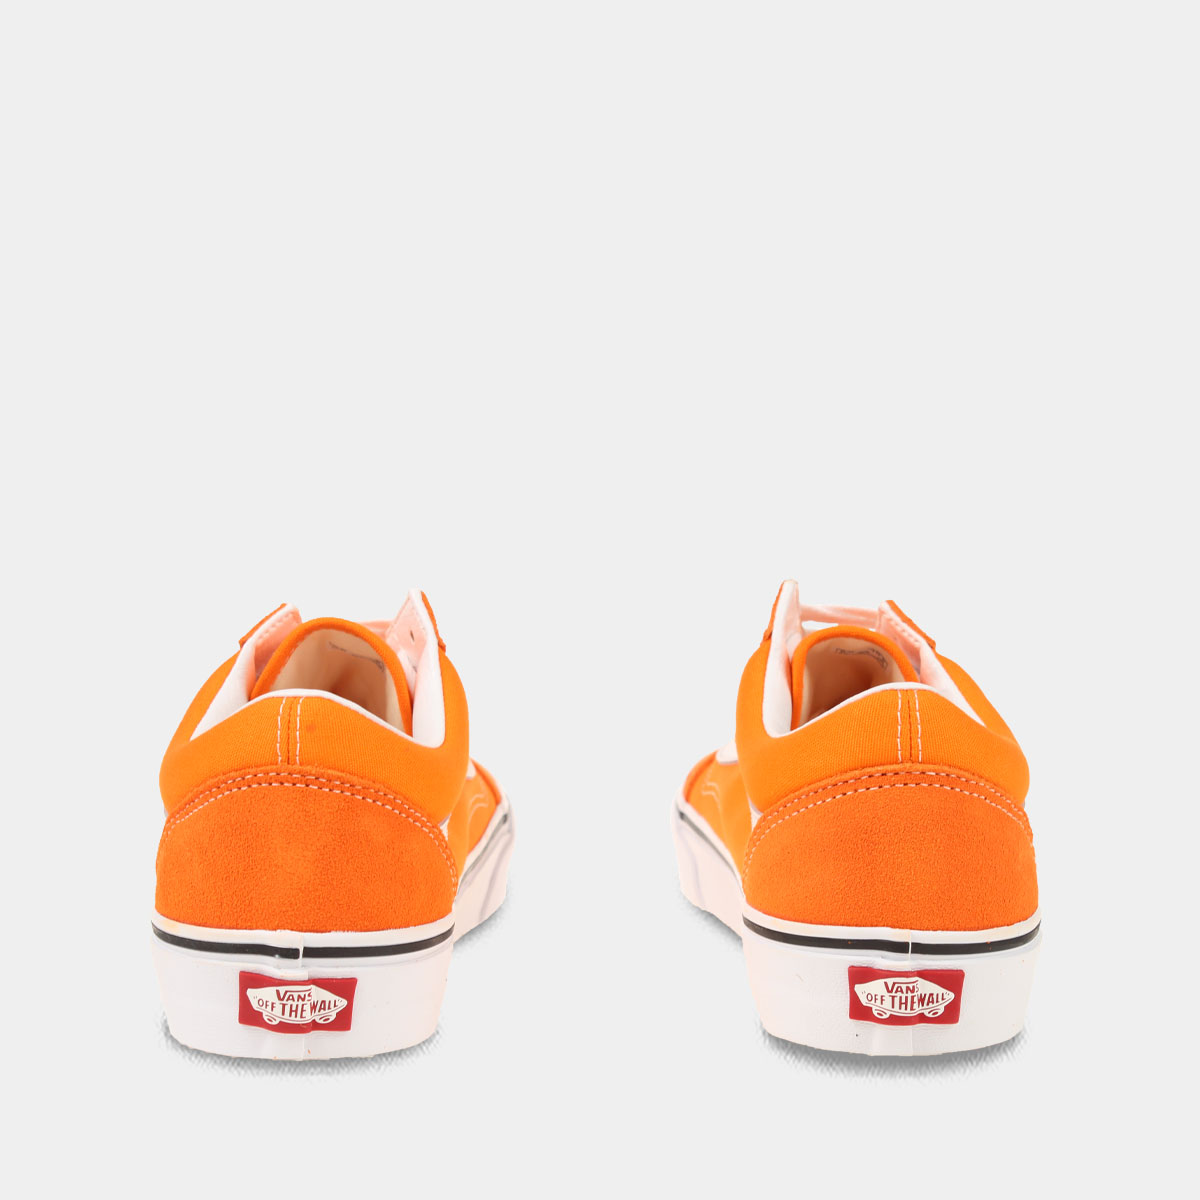 Kinderachtig Hubert Hudson residu Vans Old Skool Oranje | Lage sneakers | Sacha | Sacha